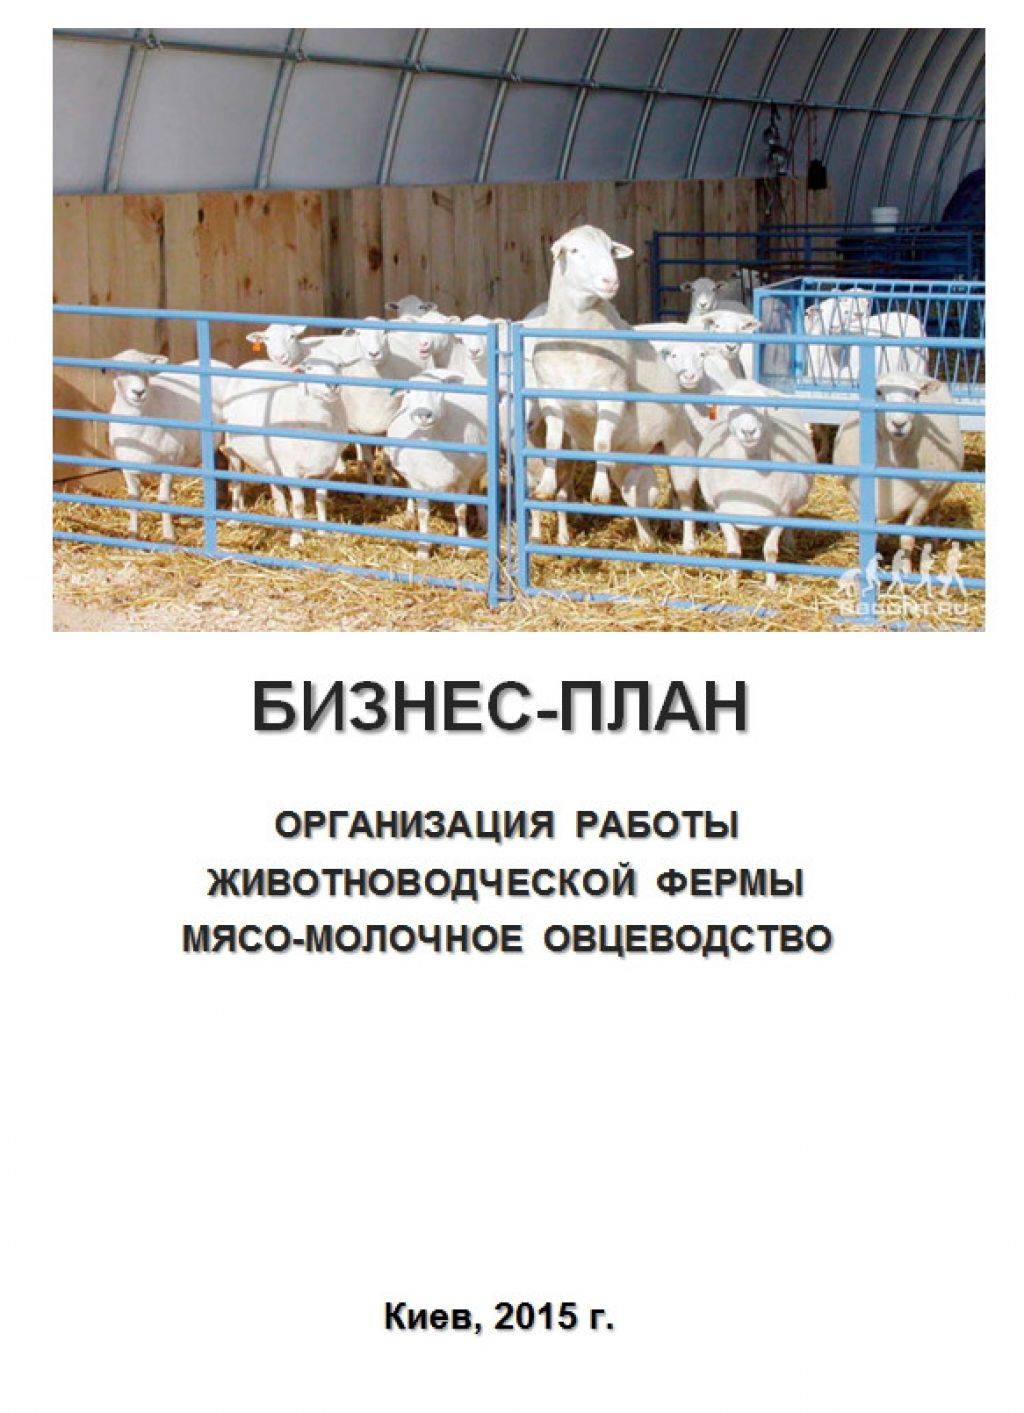 Разведение овец как бизнес — 2021 портал делового мира koordynator.info